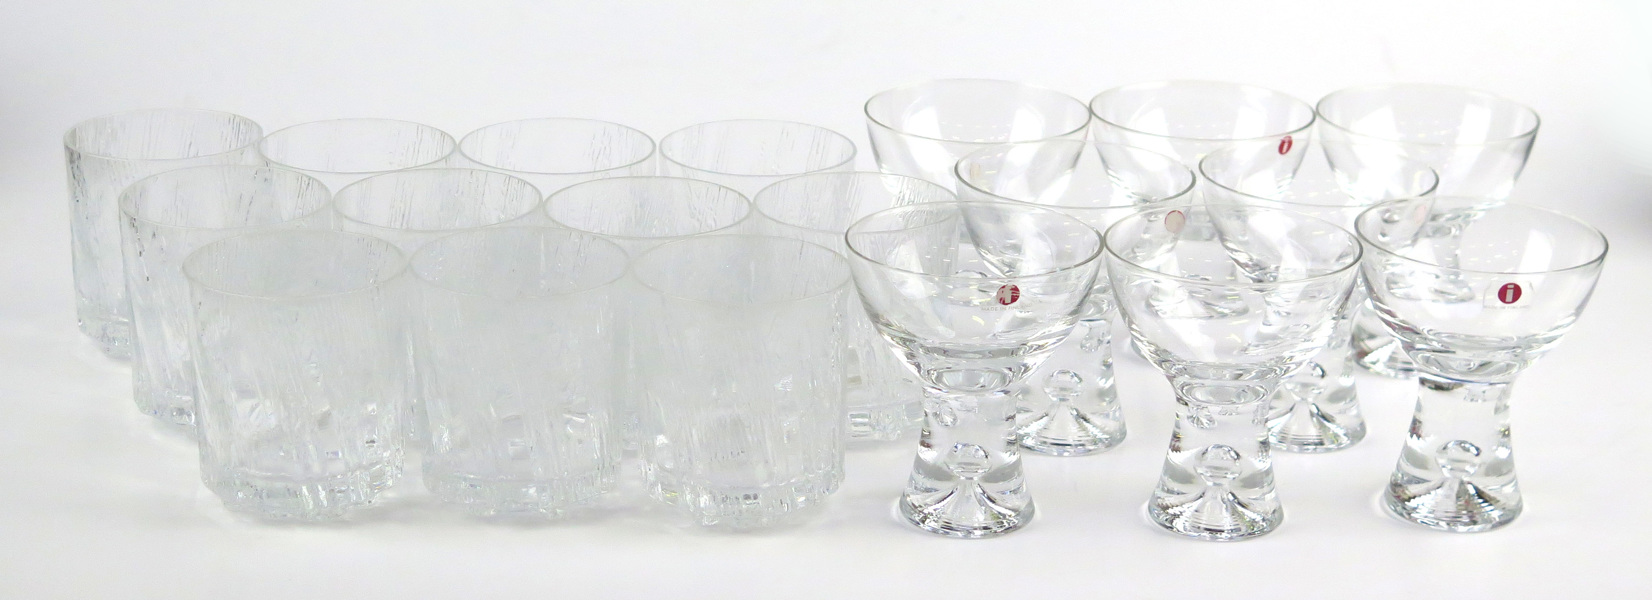 Wirkkala, Tapio för Iittala, sherryglas, 8 st, "Tapio", dekor av luftbubbla, medföljer 10 seltersglas, _17686a_lg.jpeg